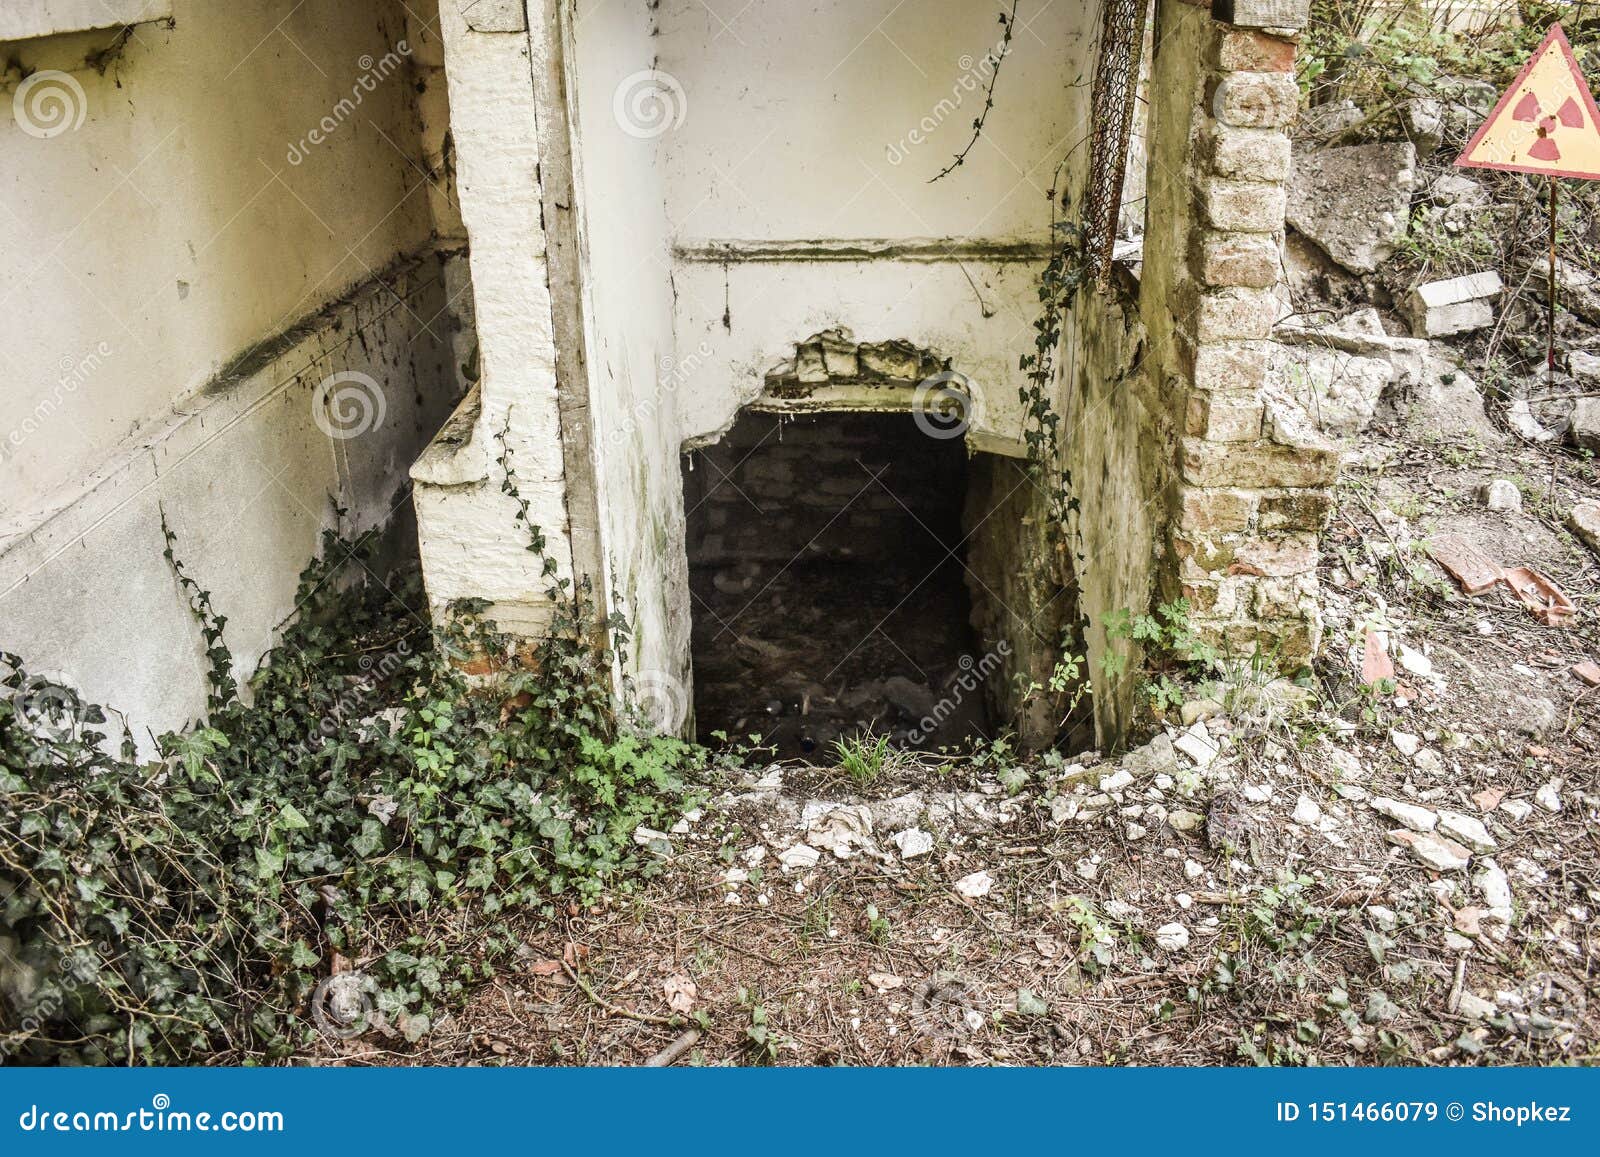 Just Discover Hidden Underground Rooms Behind The Broken